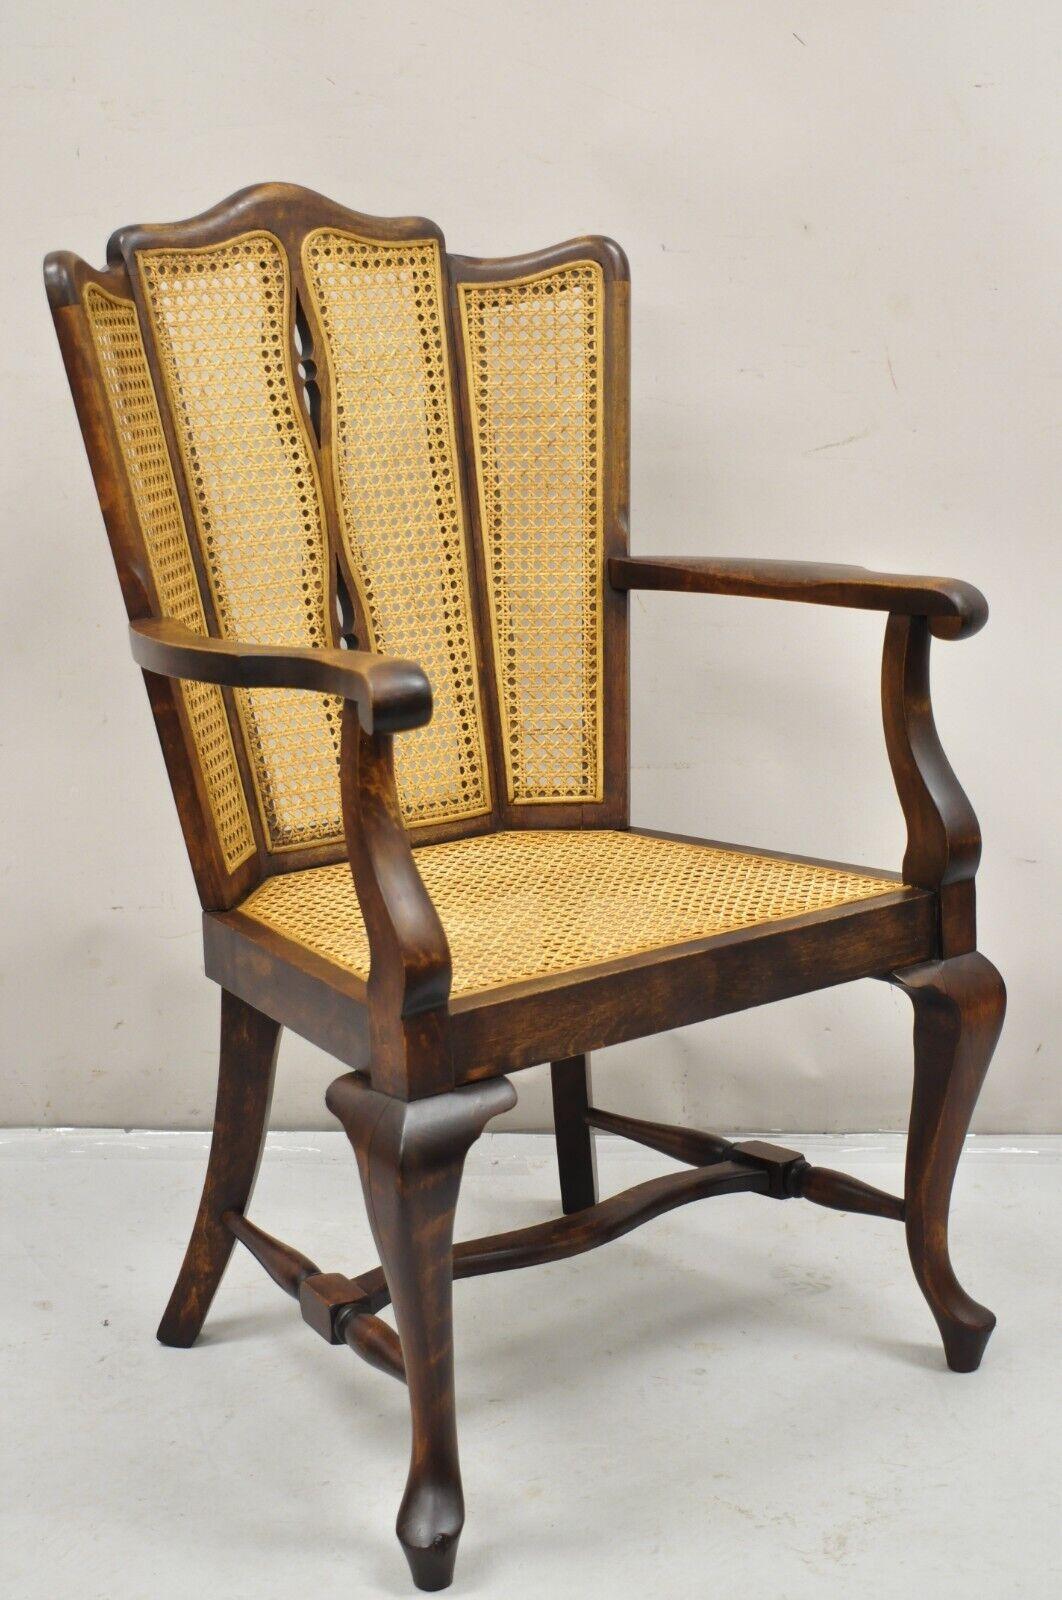 Ancienne chaise de salon victorienne en noyer et canne sculptée avec des pieds Queen Anne. Circa Early 1900s. Dimensions : 38,5